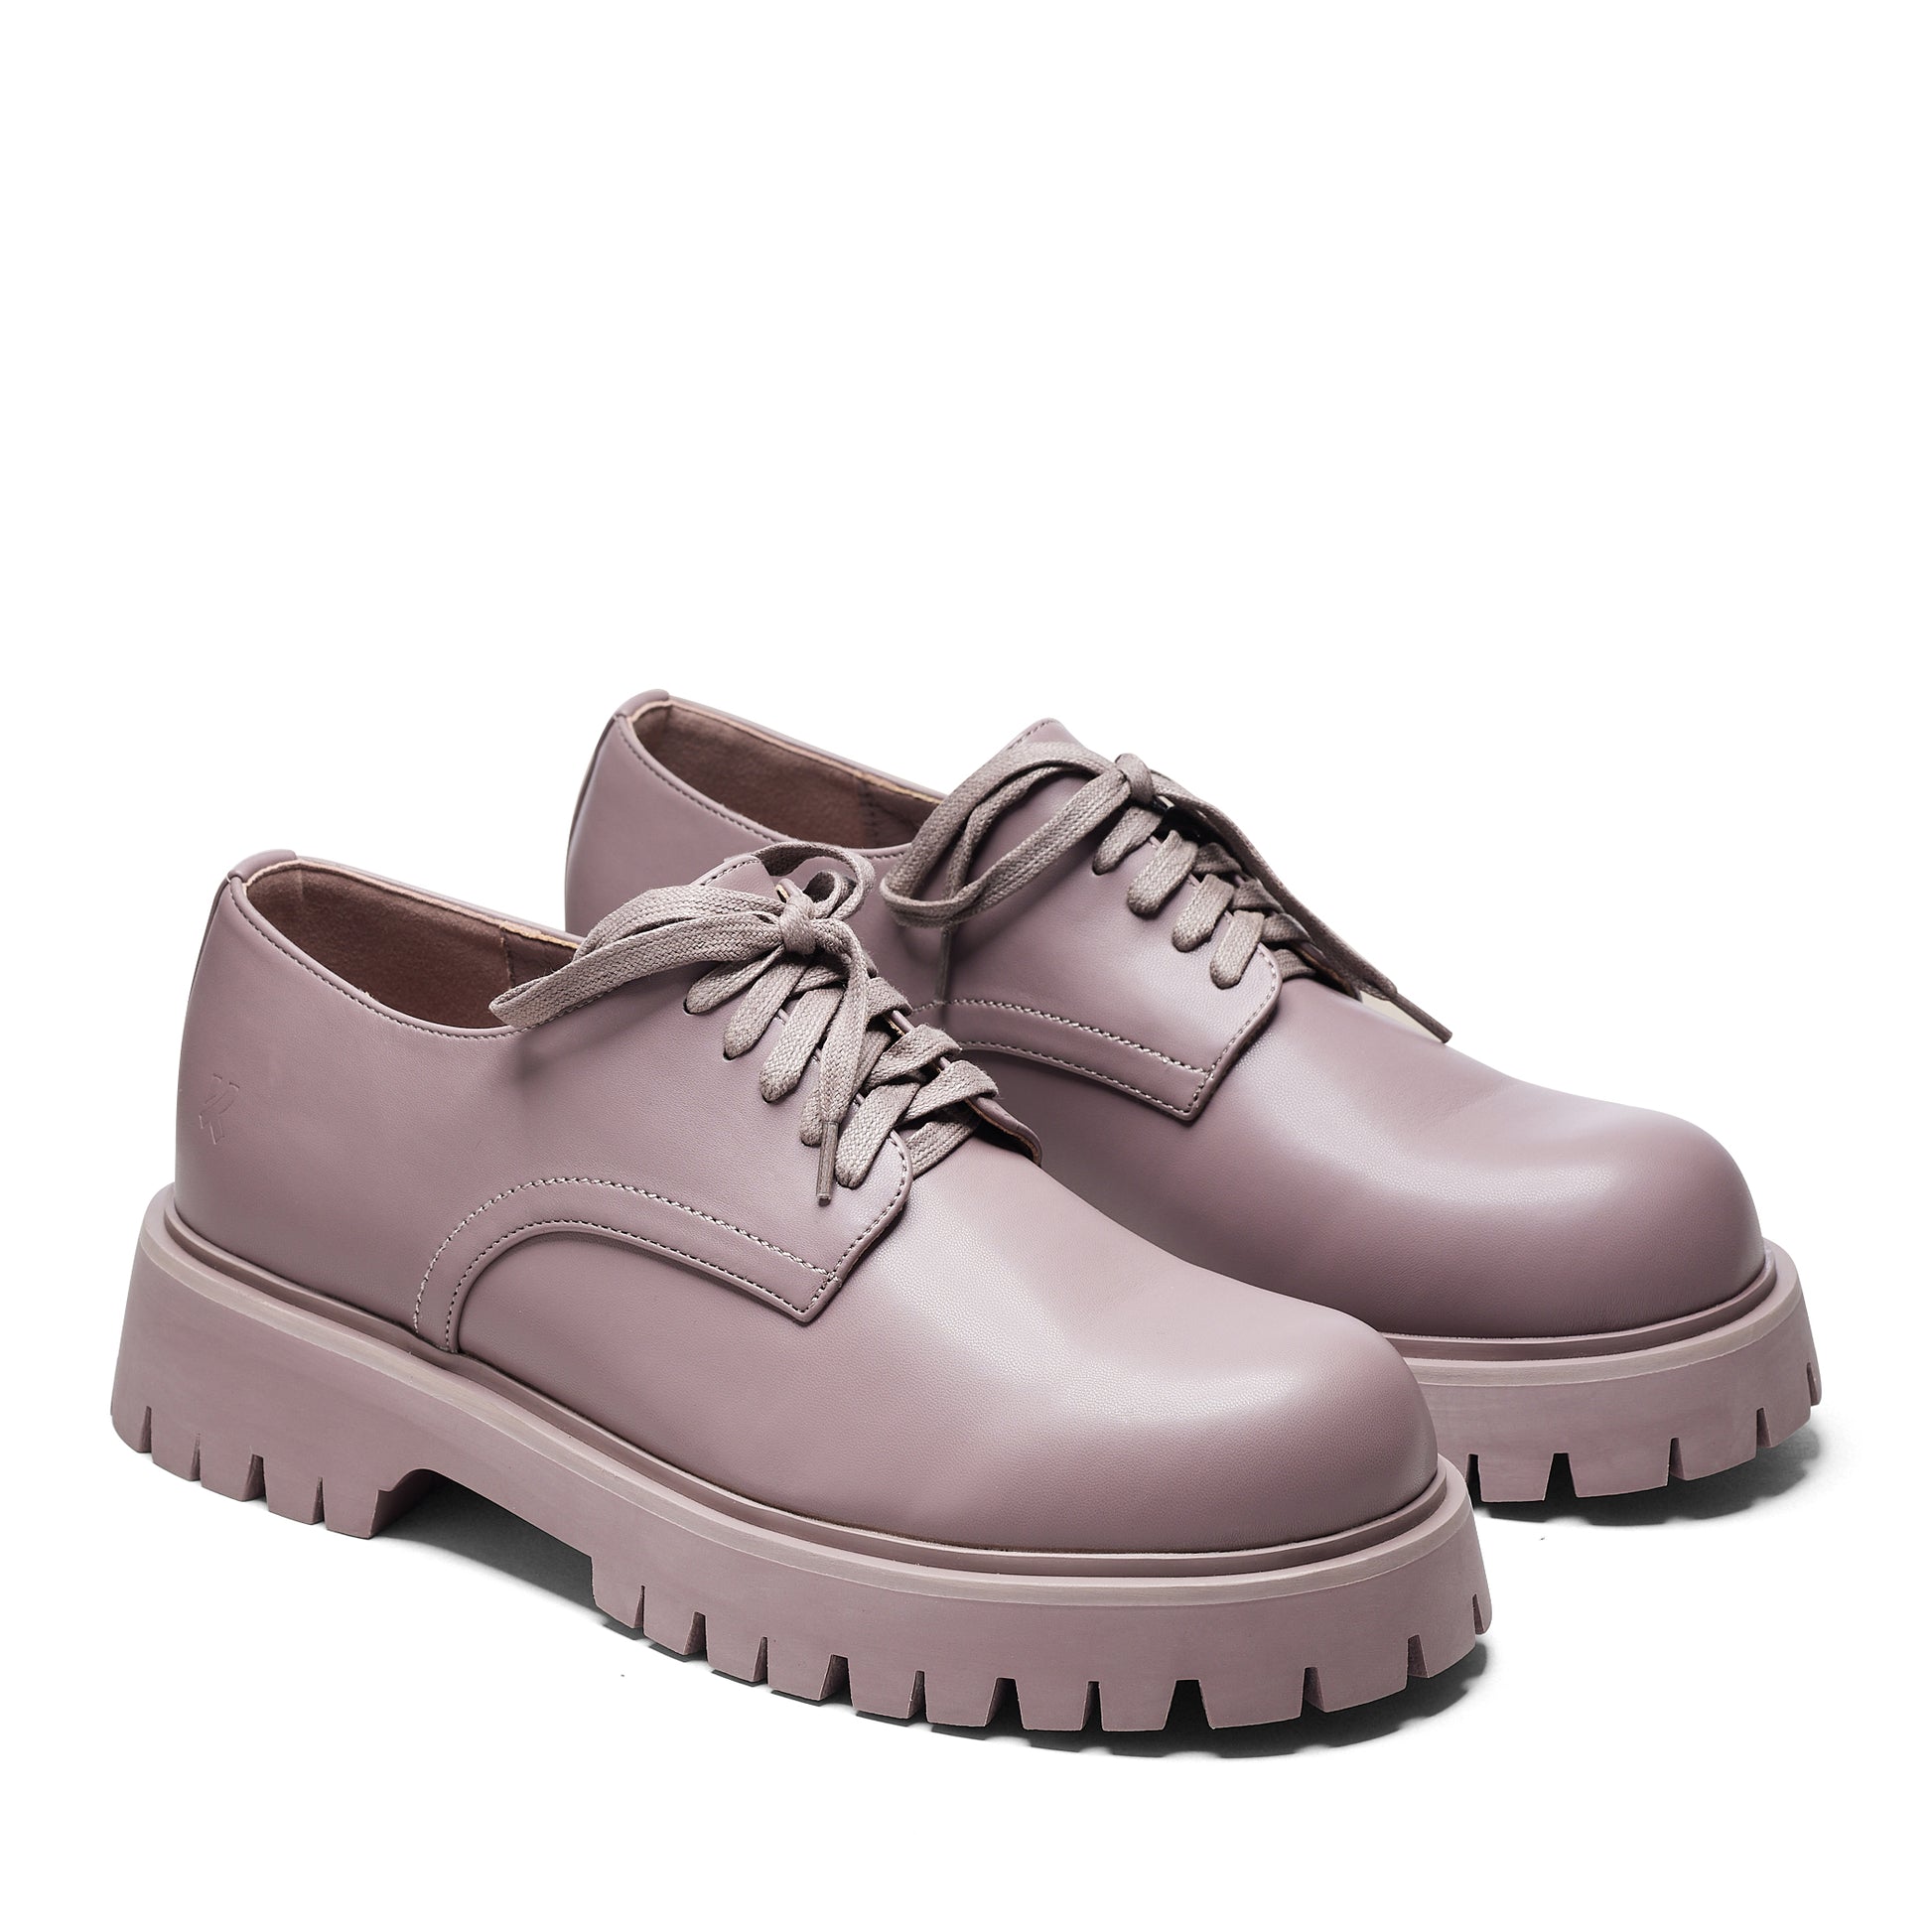 Avian Men's Lace Up Shoes-Mauve - Shoes - KOI Footwear - Purple - Three-Quarter View